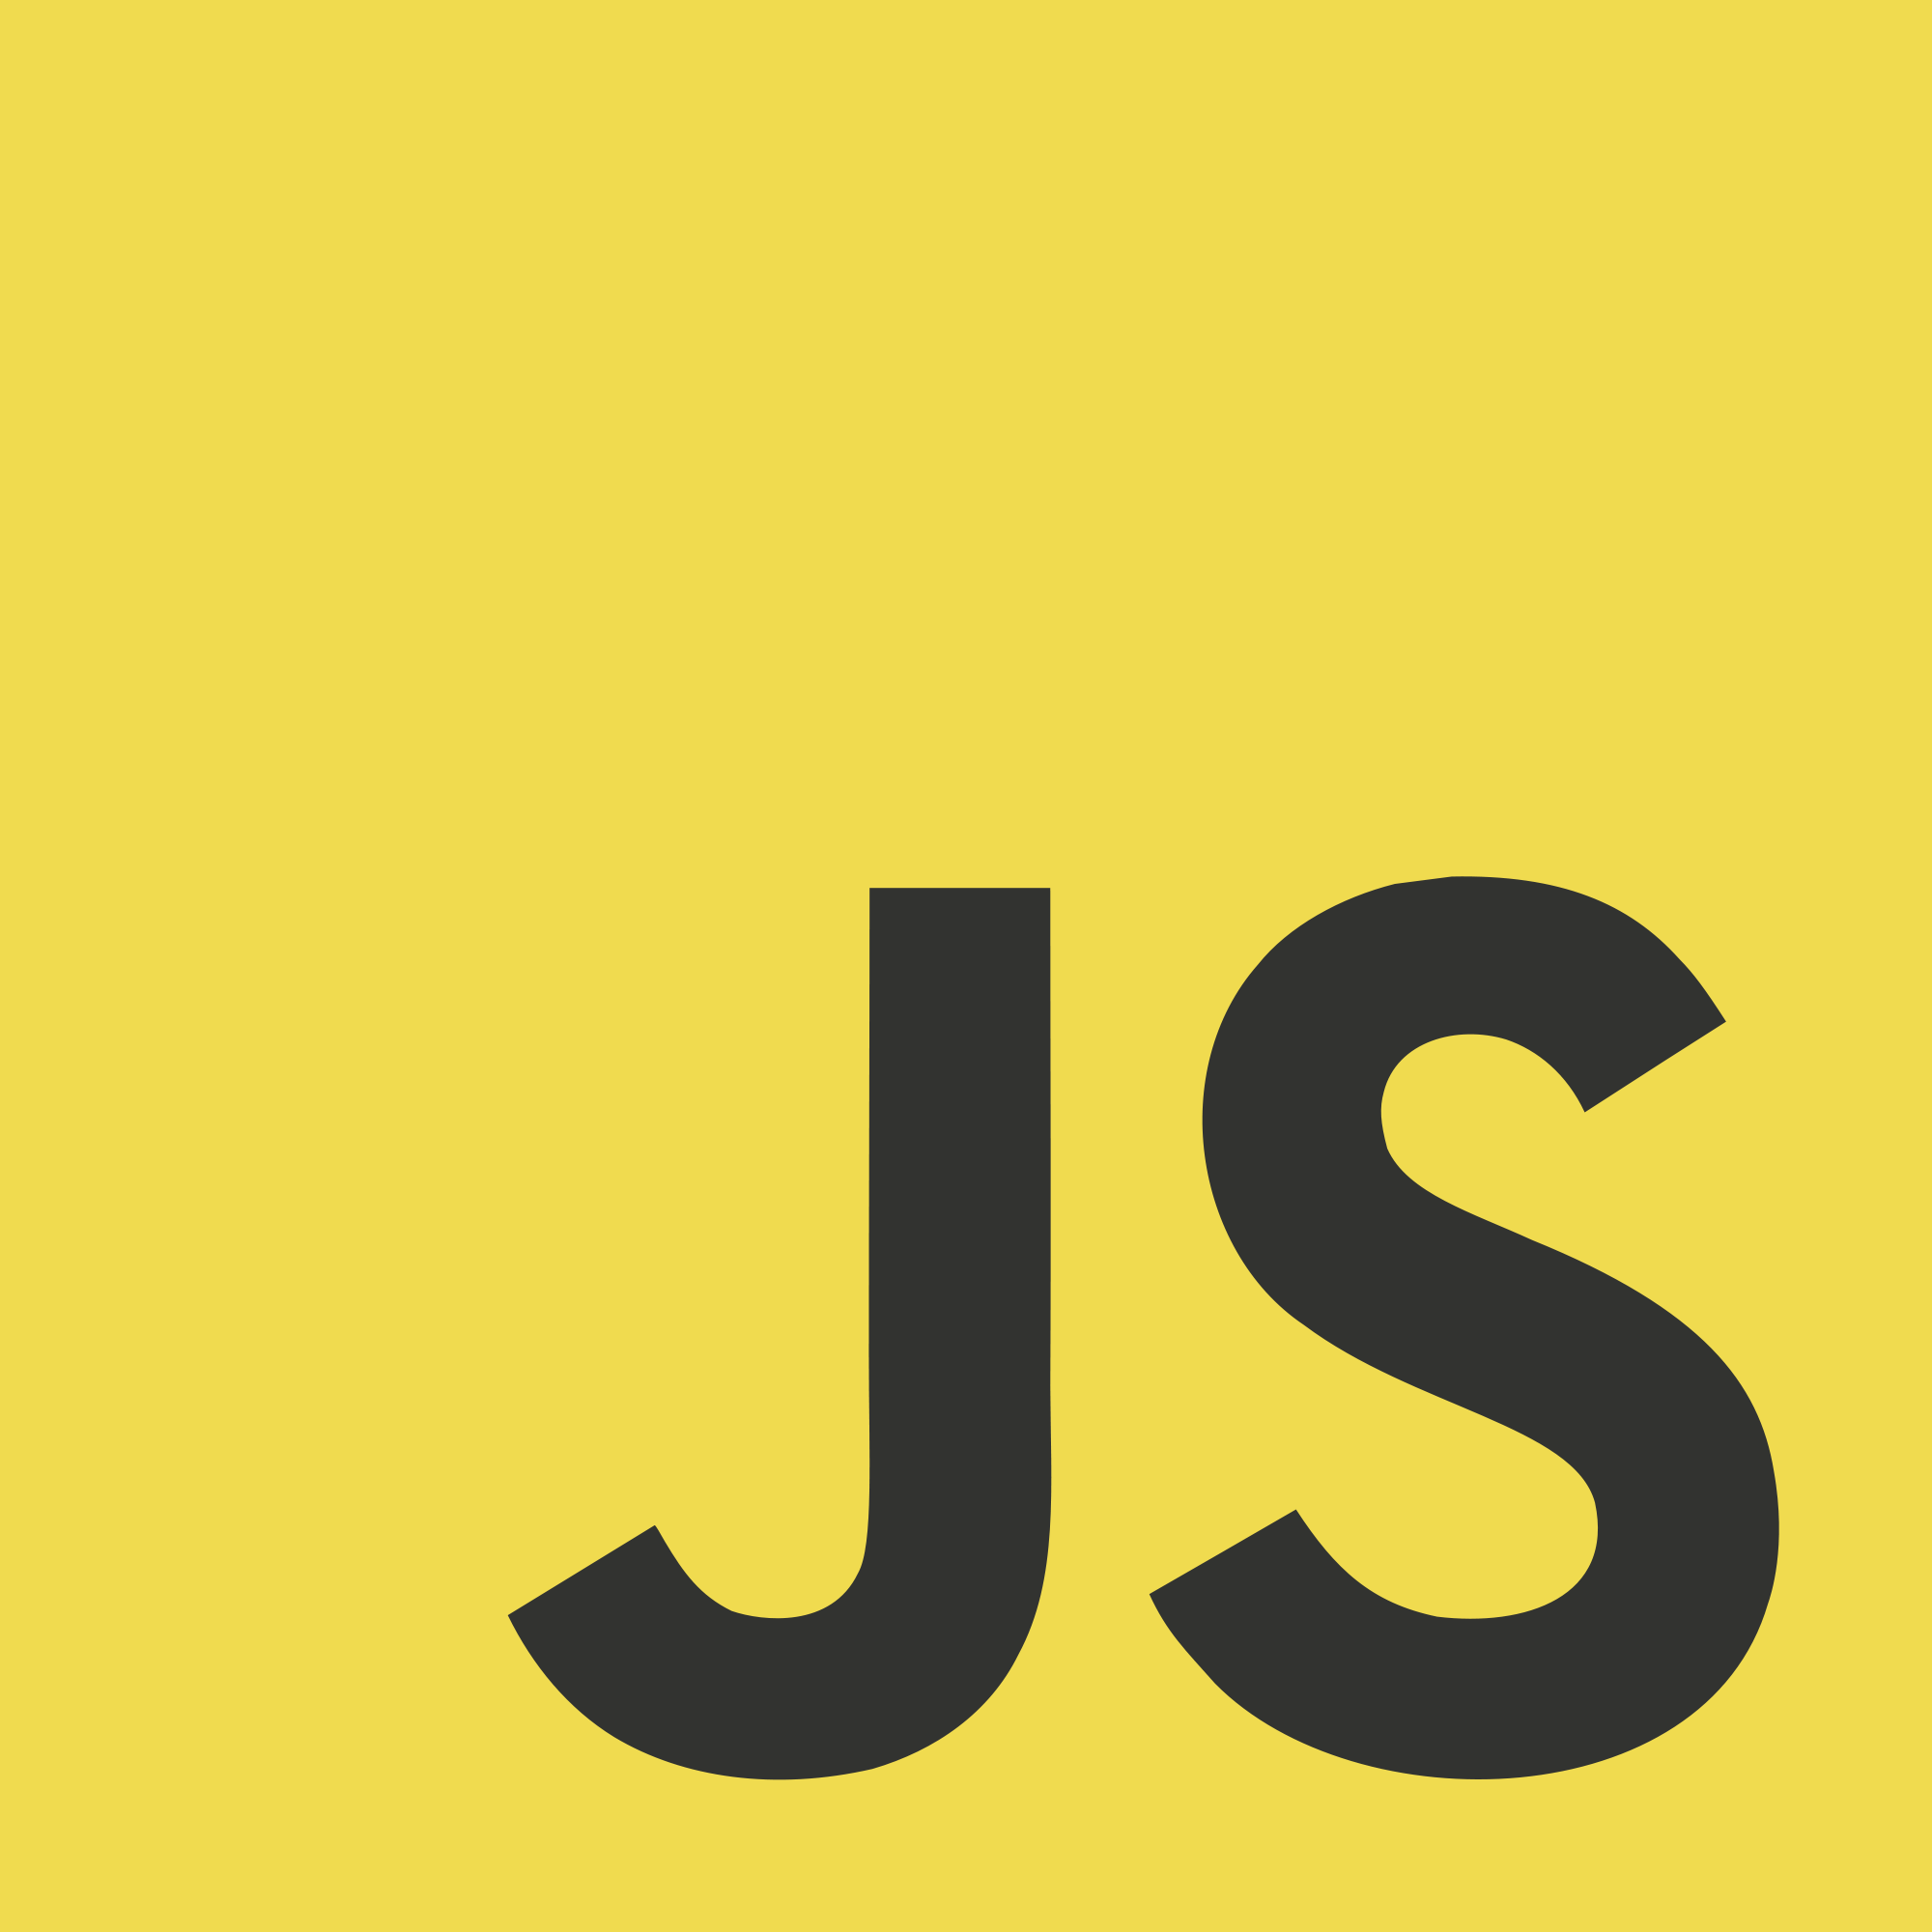 JavaScript: implementare da zero i metodi grep() e map()